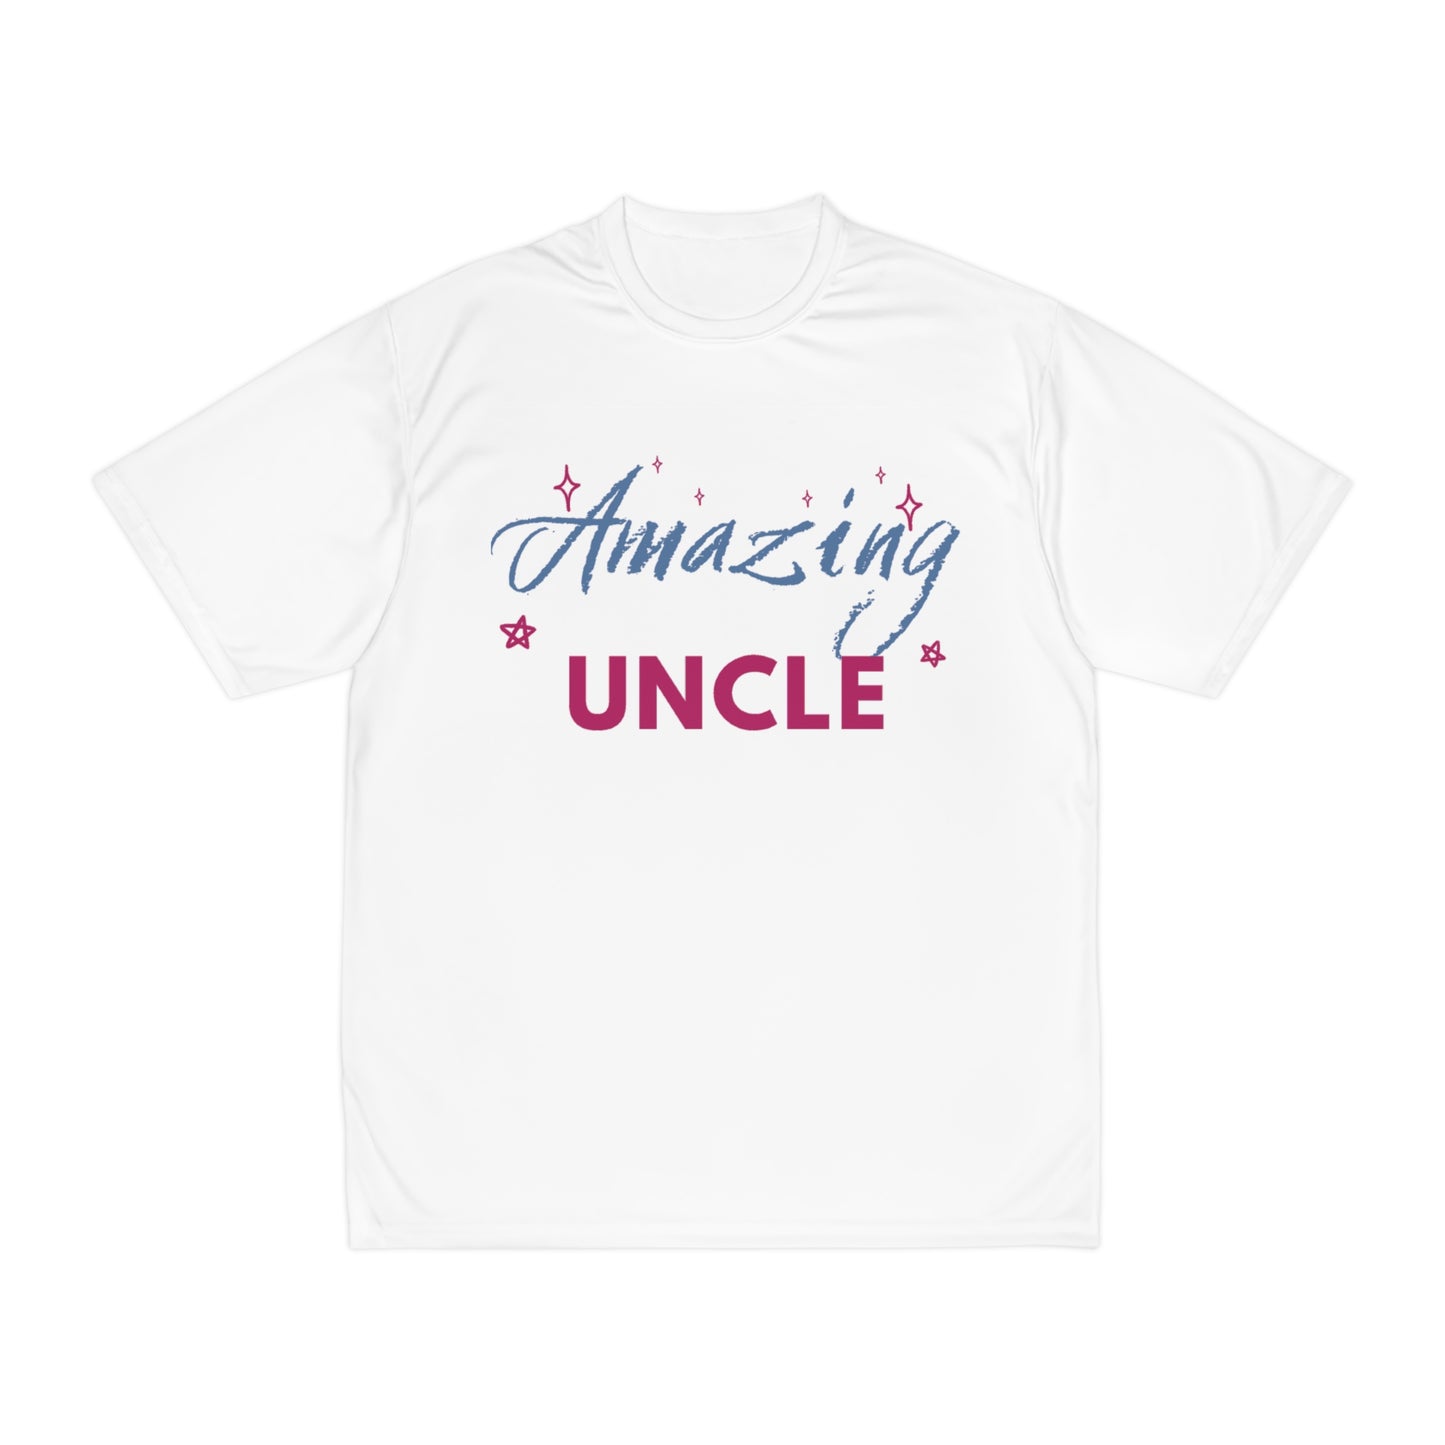 Amazing Uncle Men's Performance T-Shirt